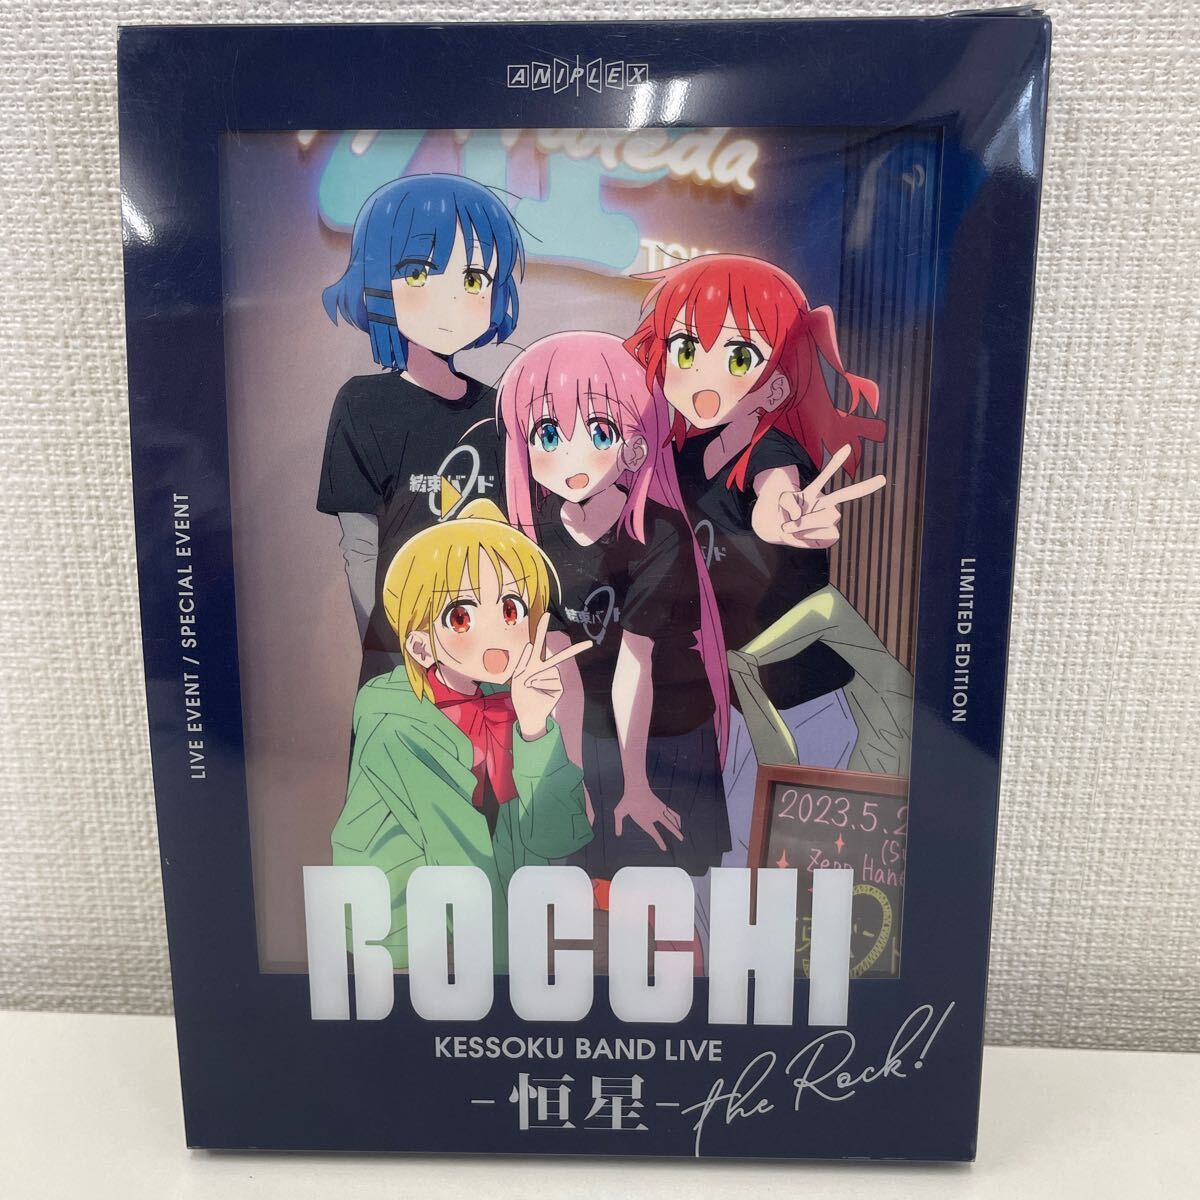 [1 иен старт ] кабельная стяжка LIVE -. звезда - совершенно производство ограниченая версия Blu-ray3 листов комплект BOCCHI the rock...*.*...